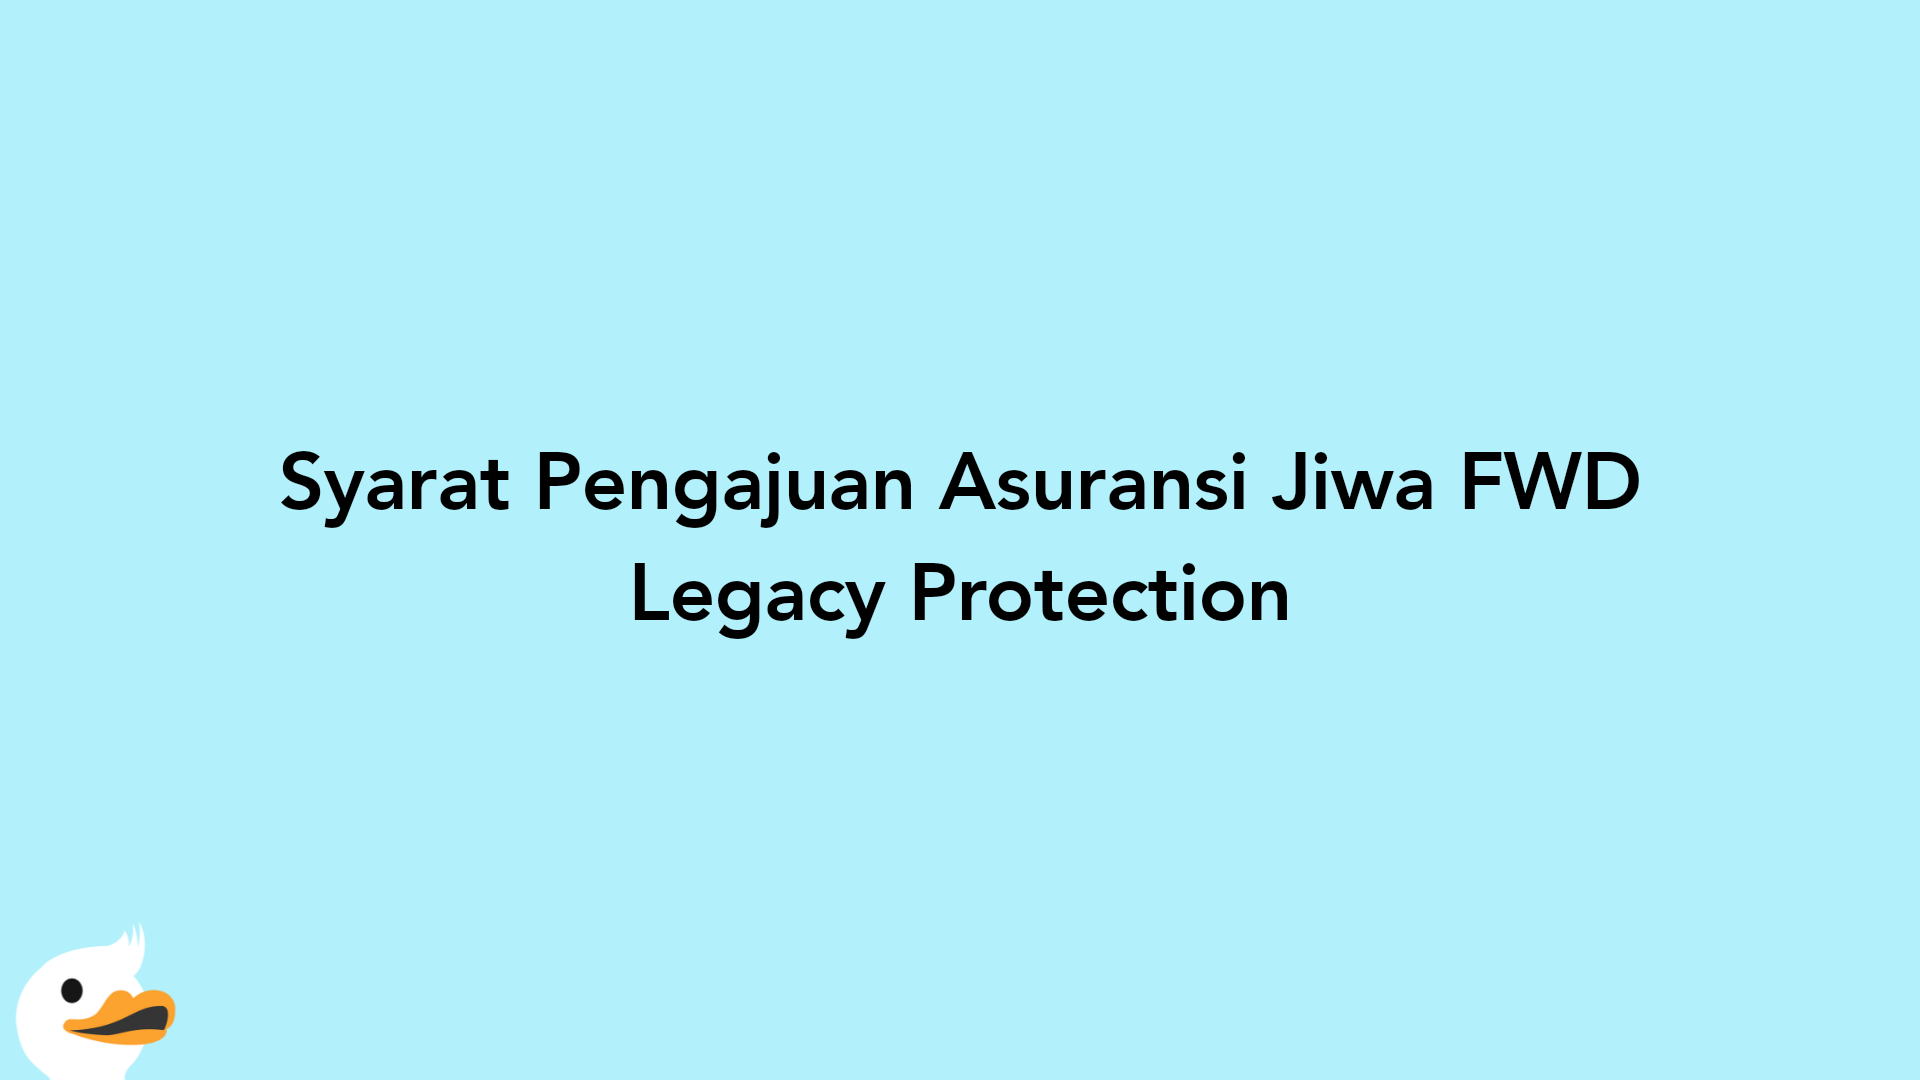 Syarat Pengajuan Asuransi Jiwa FWD Legacy Protection